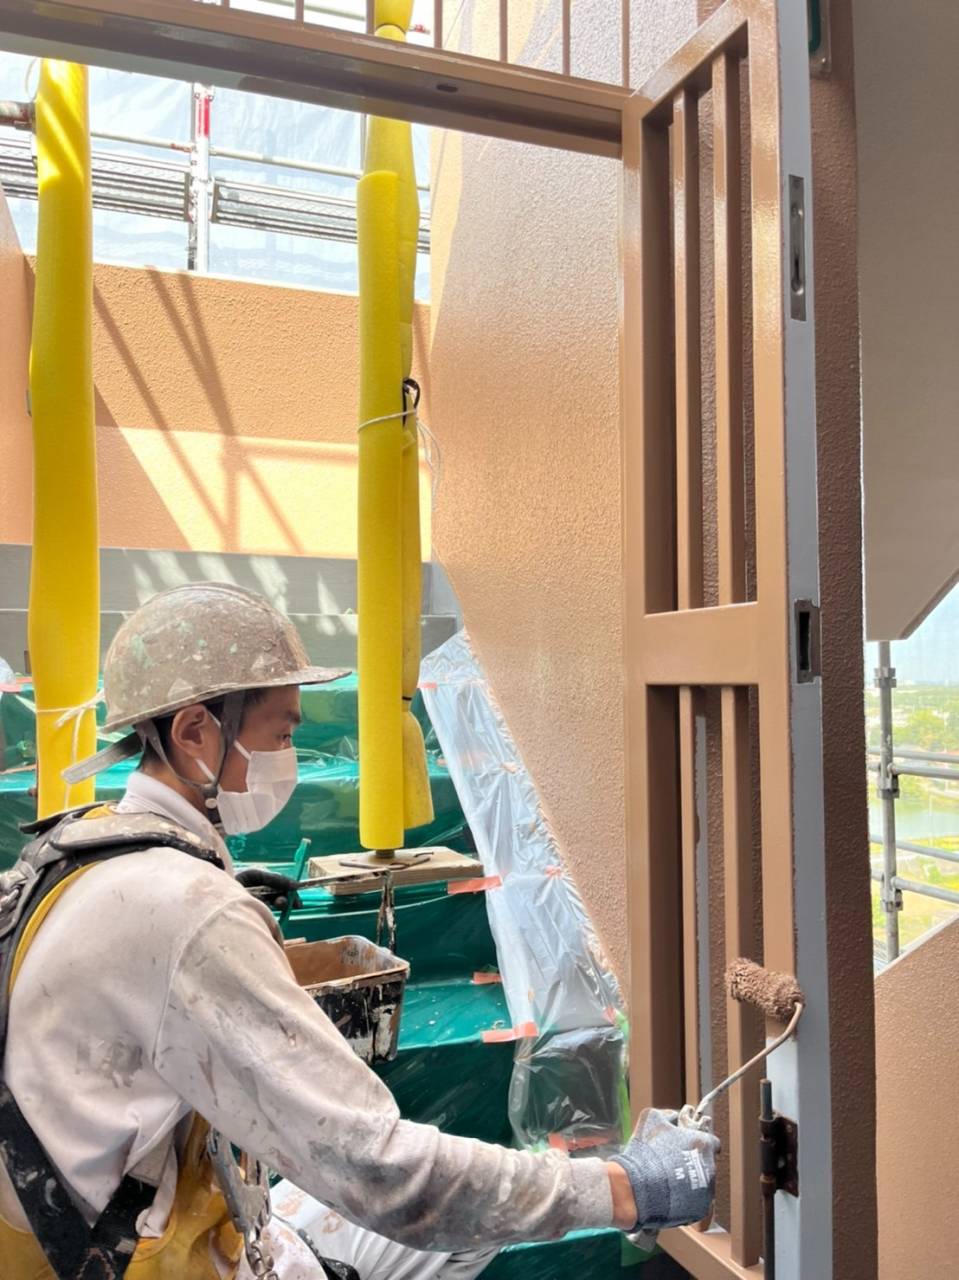 愛知県豊田市Kマンションの塗装の様子をご紹介いたします✨愛知・名古屋で塗装工事をお考えの方は是非三誠株式会社にお任せください😄